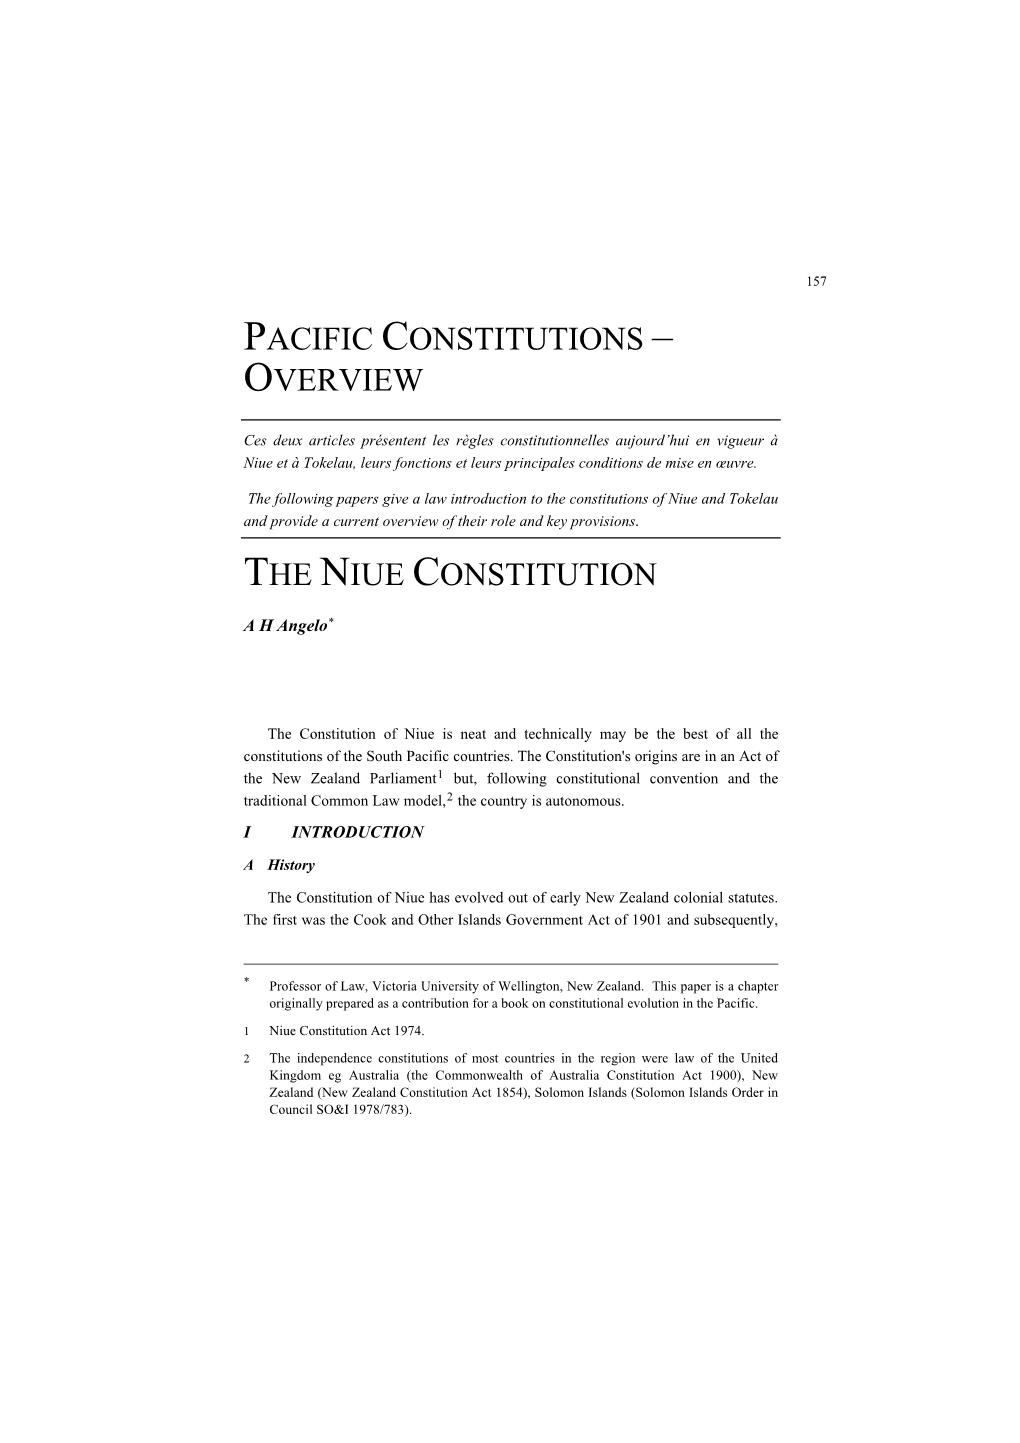 Niue Constitution